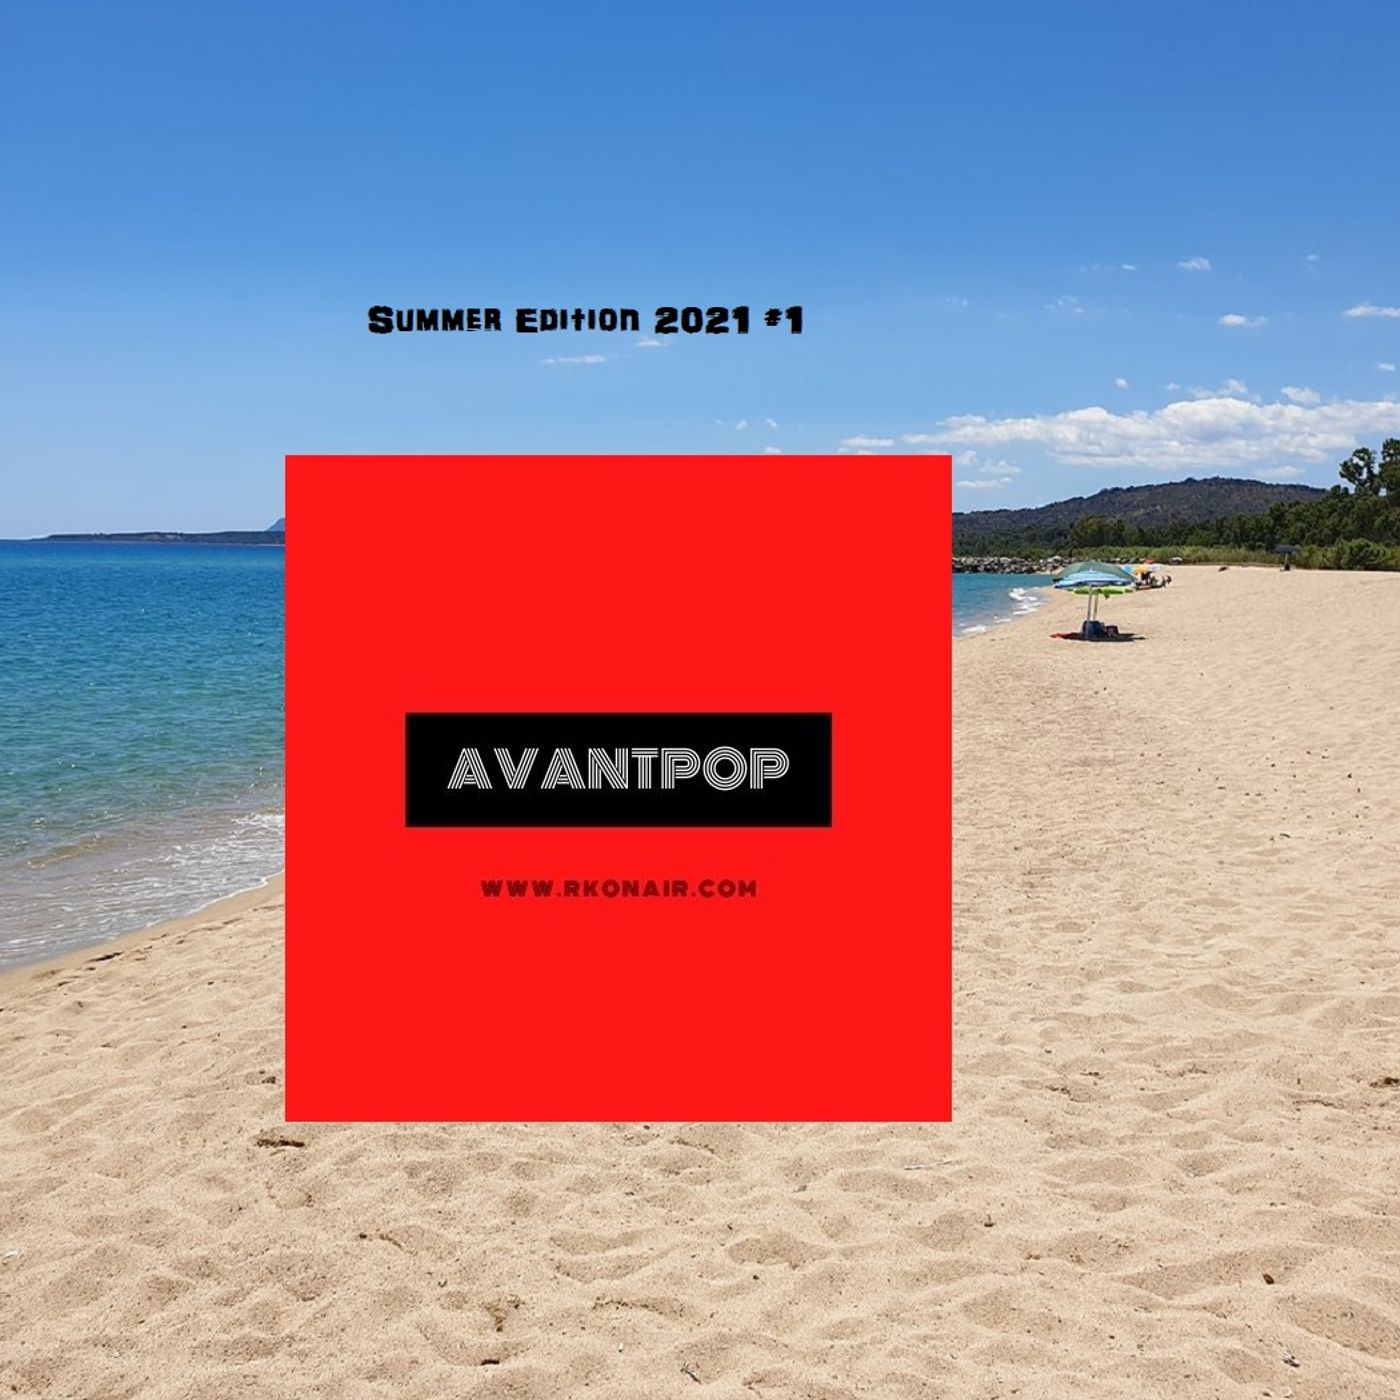 AVANTPOP Summer Edition 2021 #1 - 27/05/2021